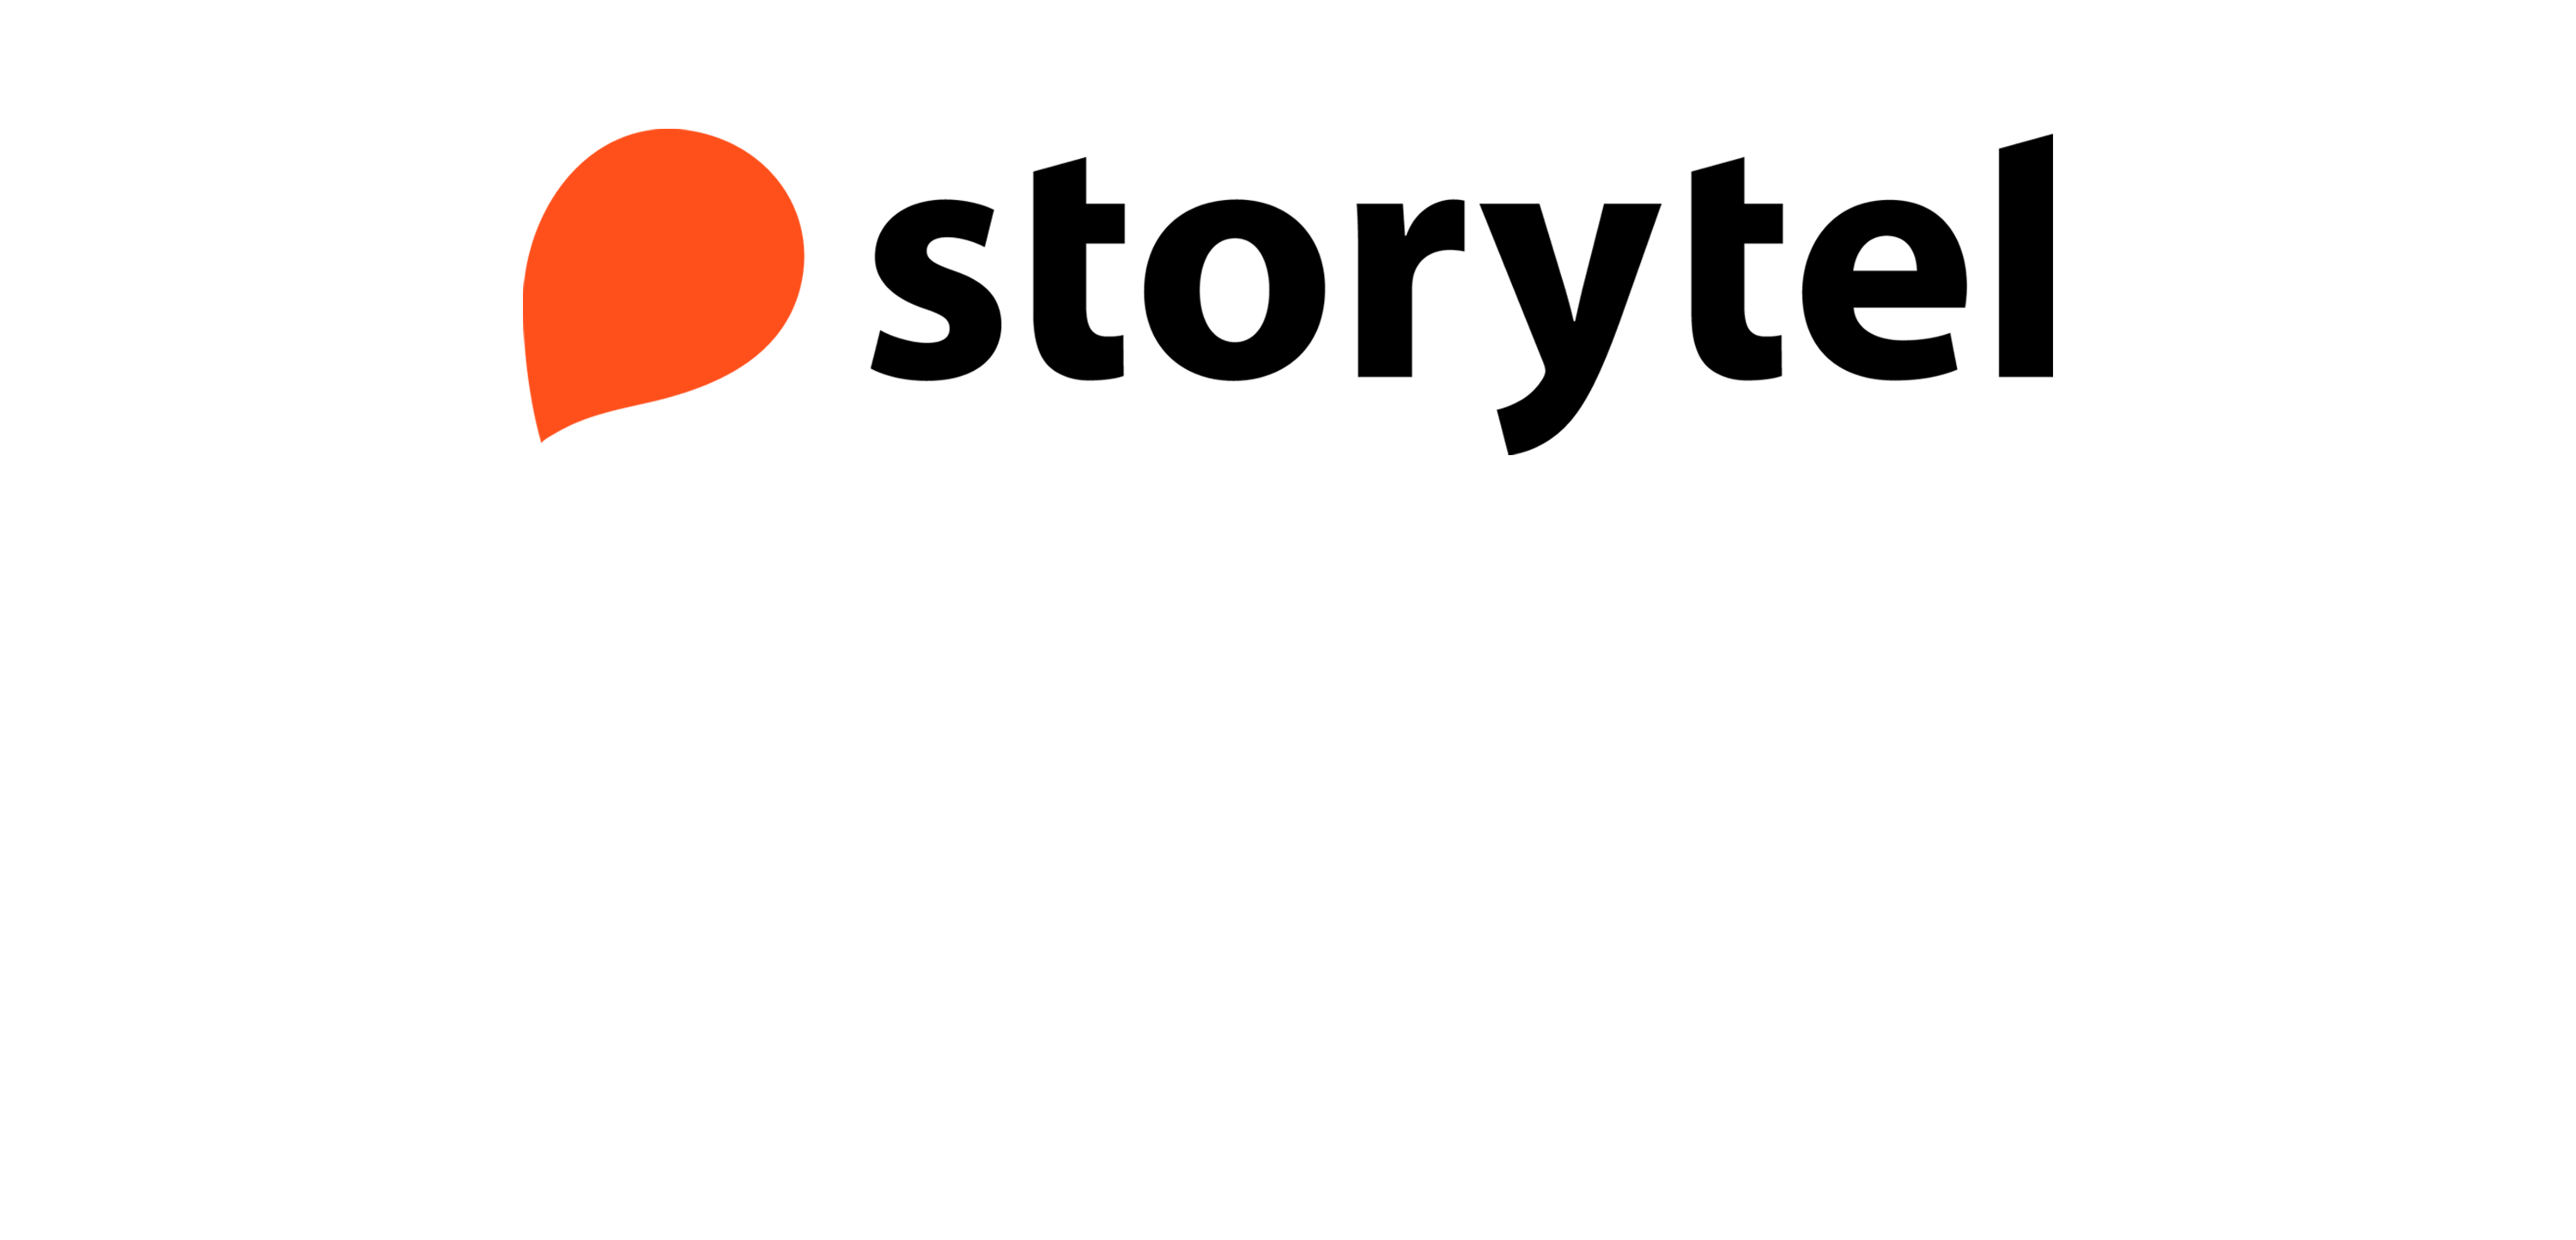 storytel logo